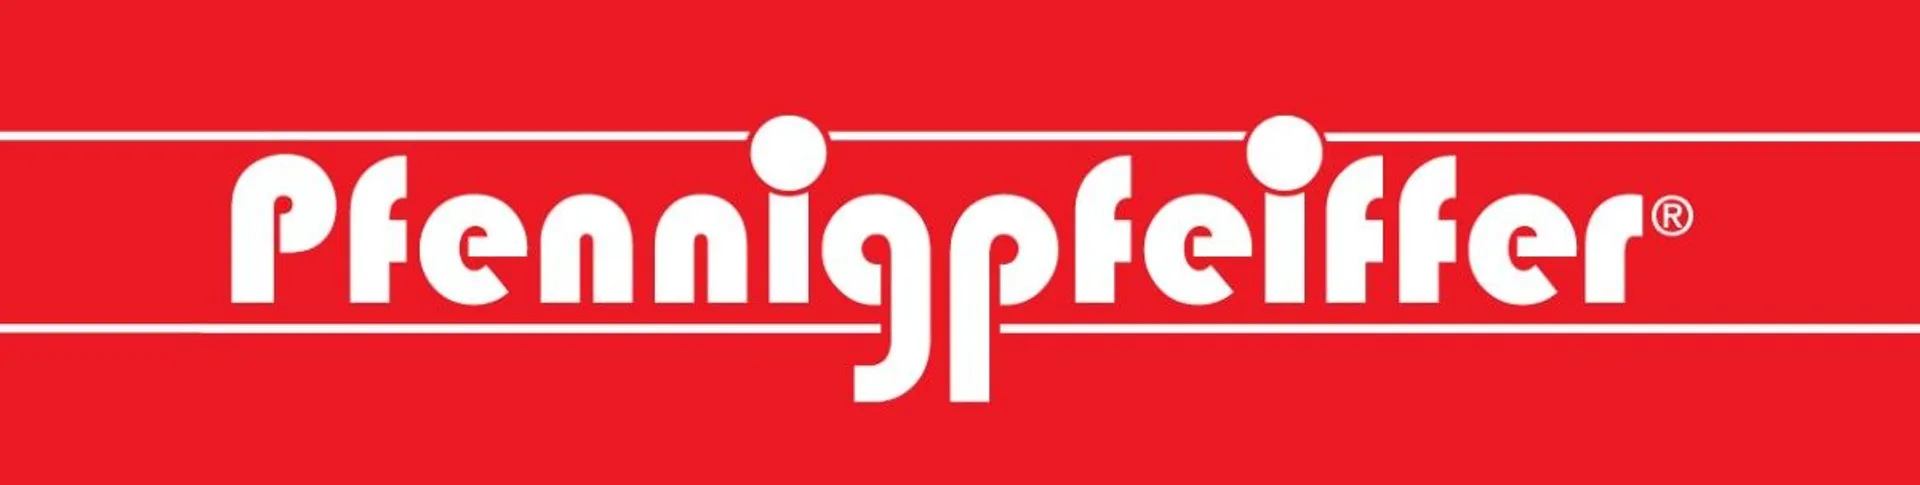 PFENNIGPFEIFFER logo